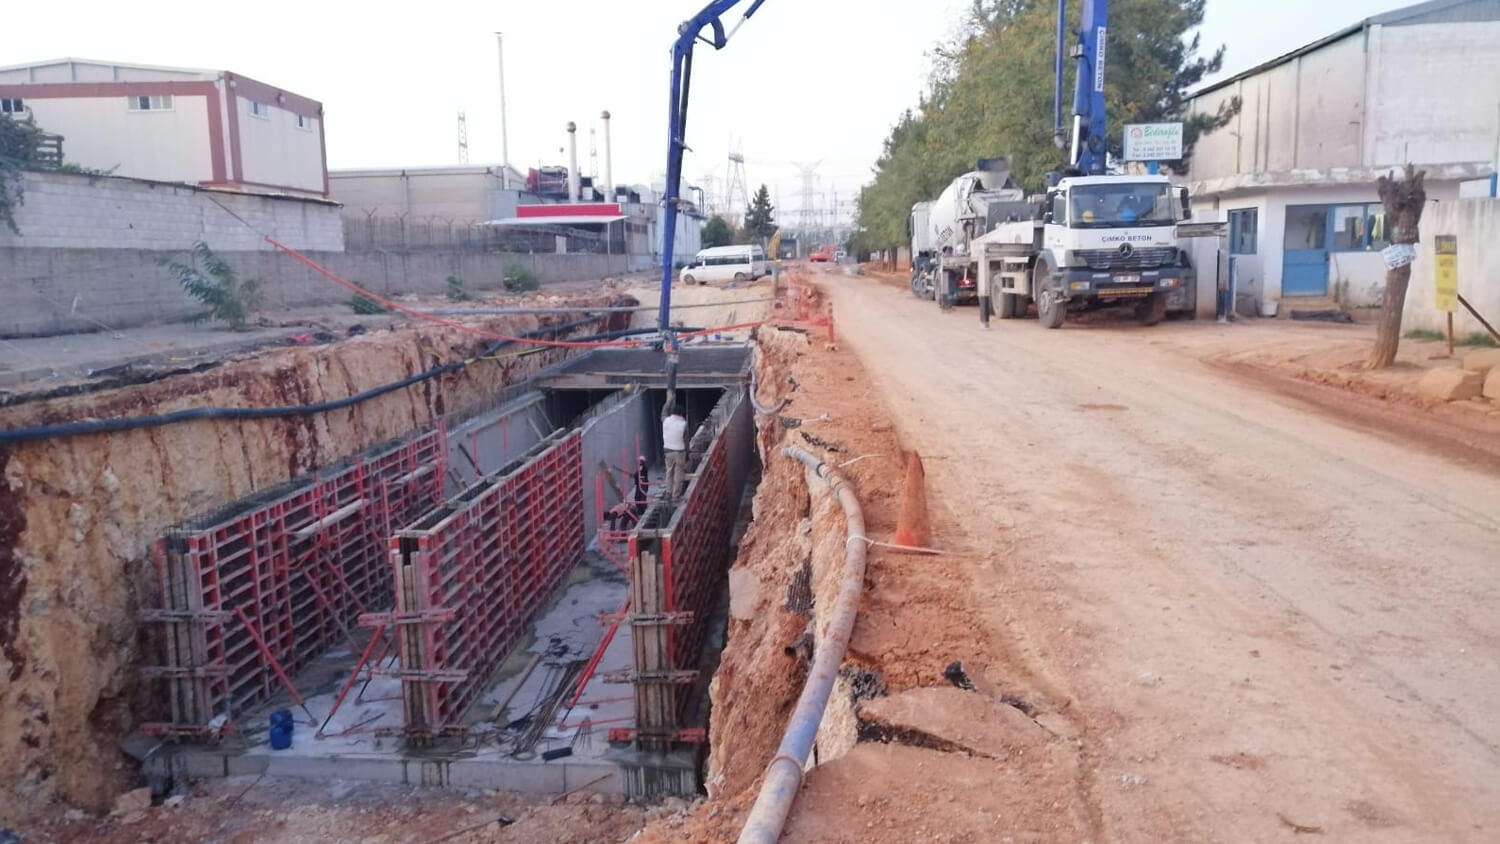 Gaziantep OSB 2 Bölgesindeki Kısımda Betonarme Kapalı ve Açık Kesitlerde Menfez Yapımı